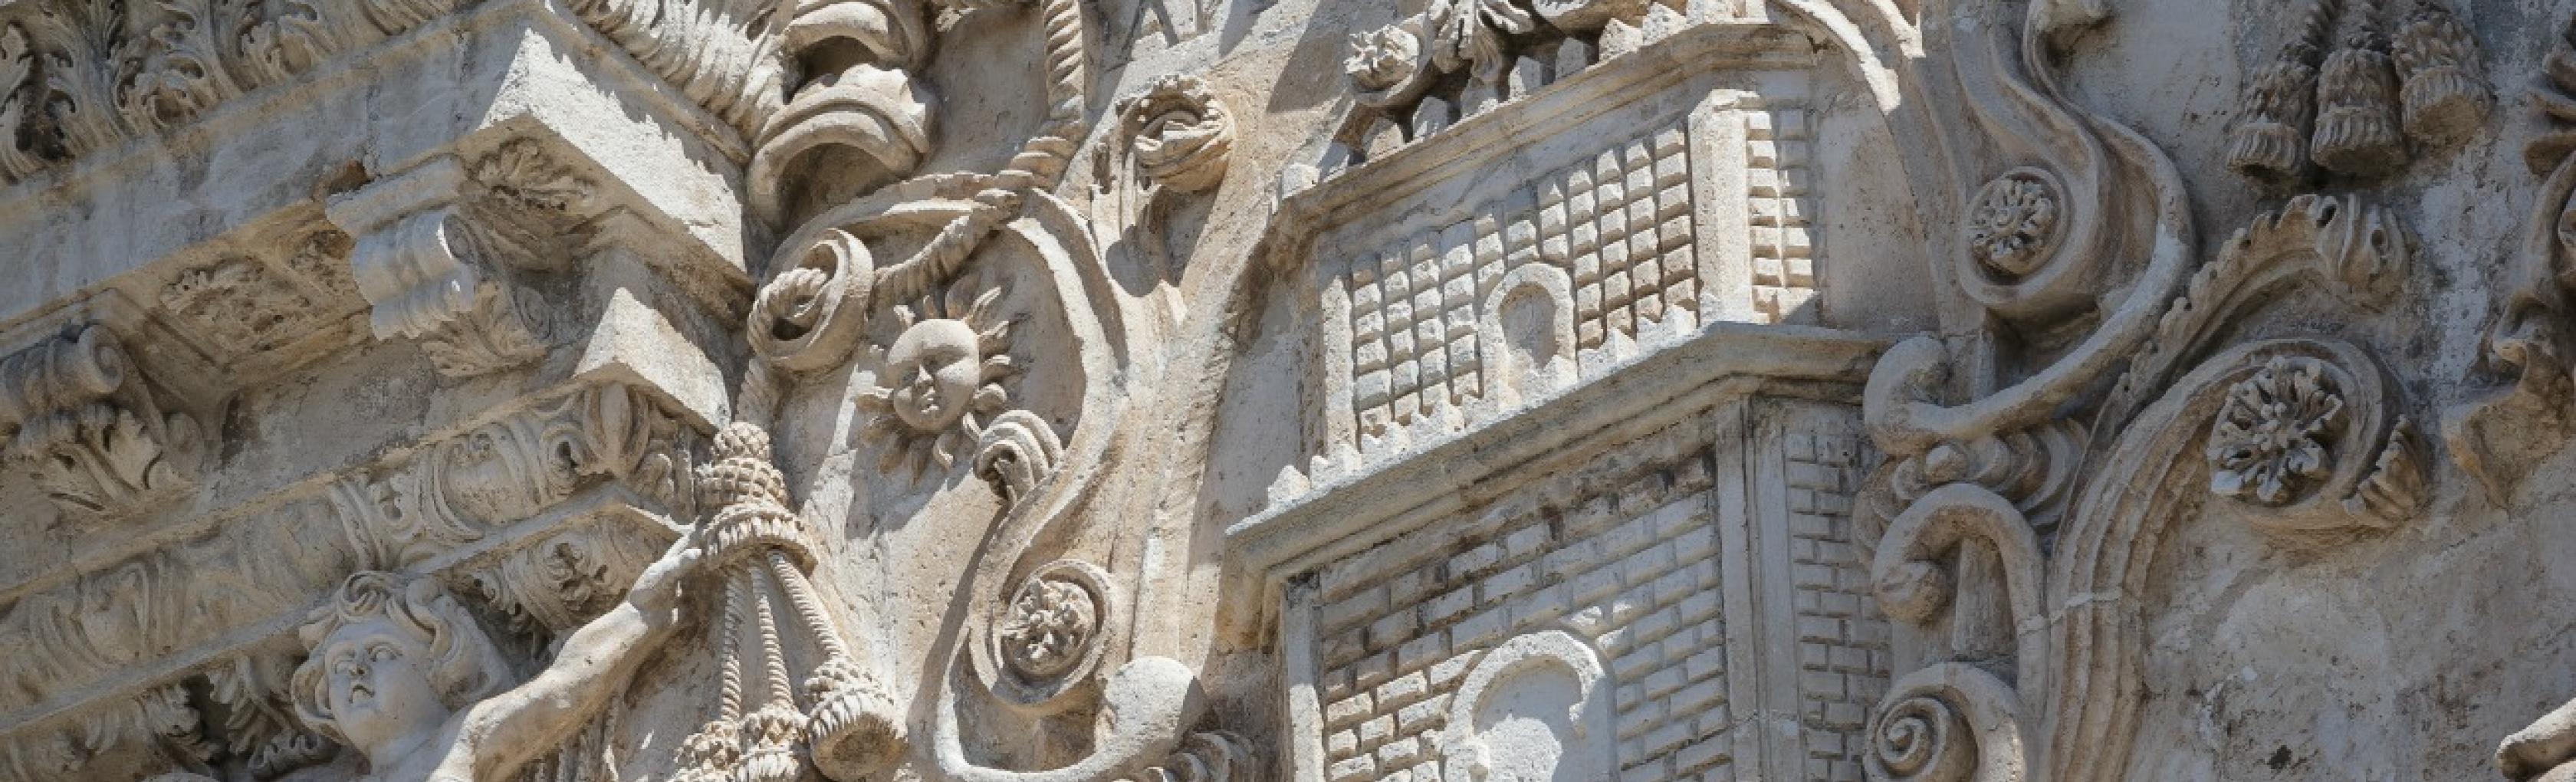 Cattedrale di San Nicola, particolare della facciata - Sassari